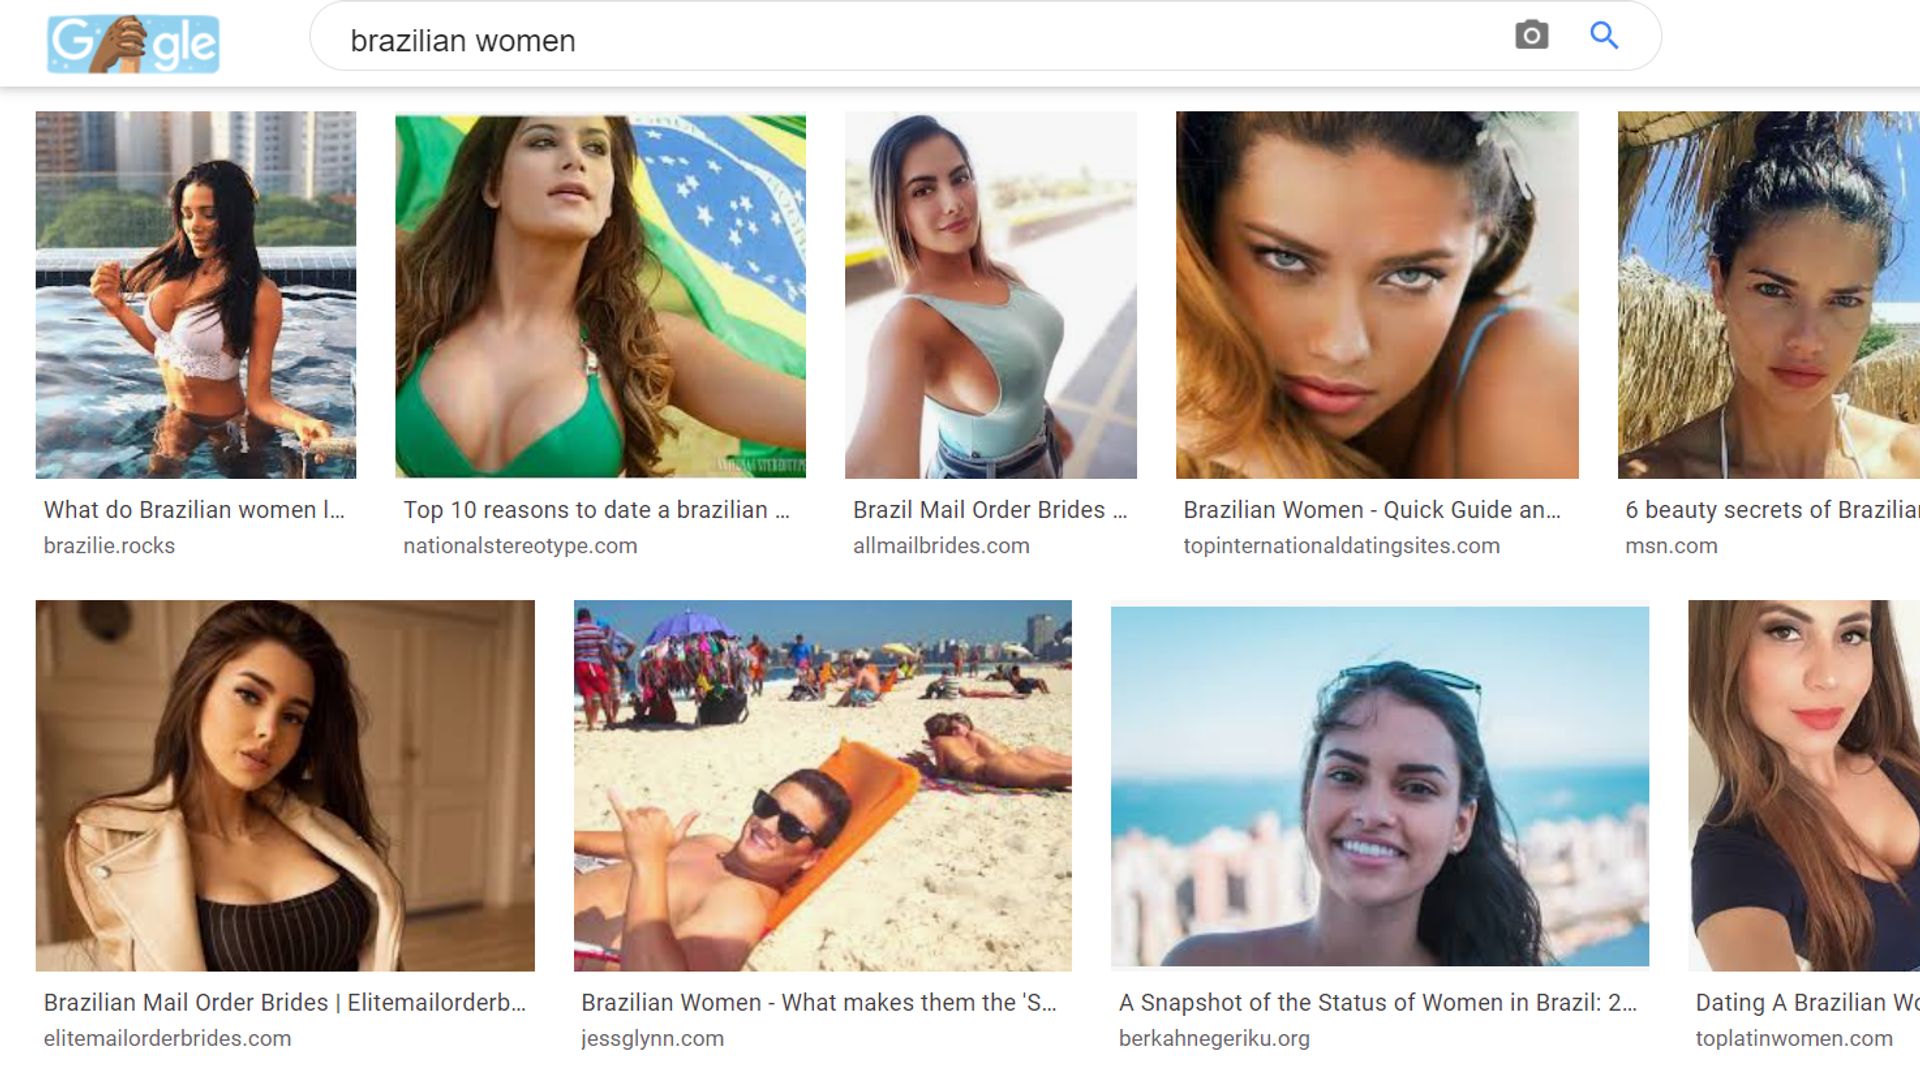 Google Images bevestigt vooroordelen over Thaise en Braziliaanse vrouwen - Joop